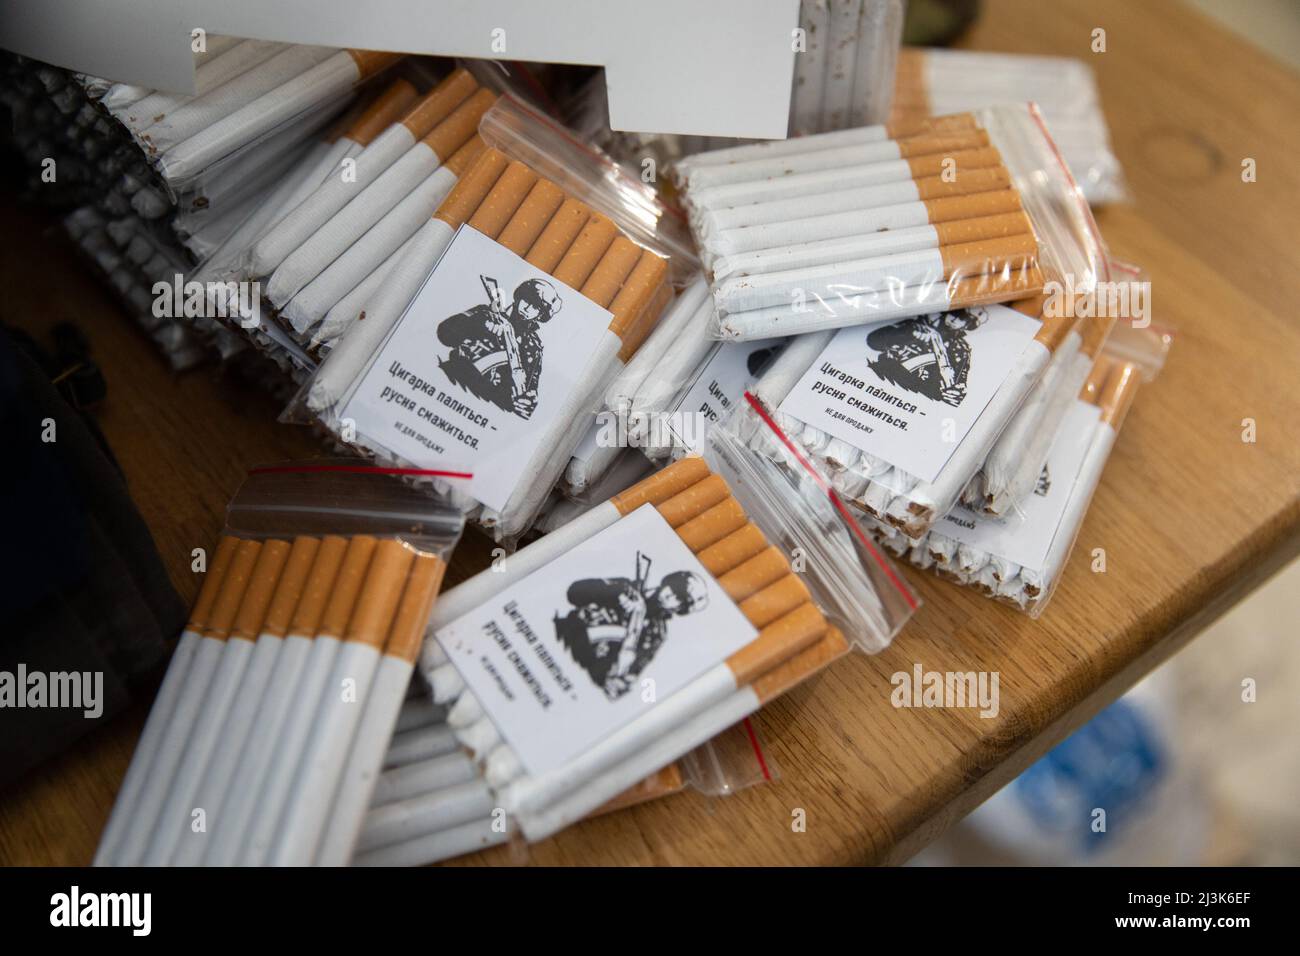 Le sigarette sono imballate da volontari, come saranno consegnate in prima linea per i soldati ucraini. Mentre la guerra progredisce, i cittadini di Kyiv si offrono volontariamente per aiutare la loro patria in modi diversi, come la distribuzione di cibo agli anziani, e la cucina per i soldati in prima linea. Foto Stock